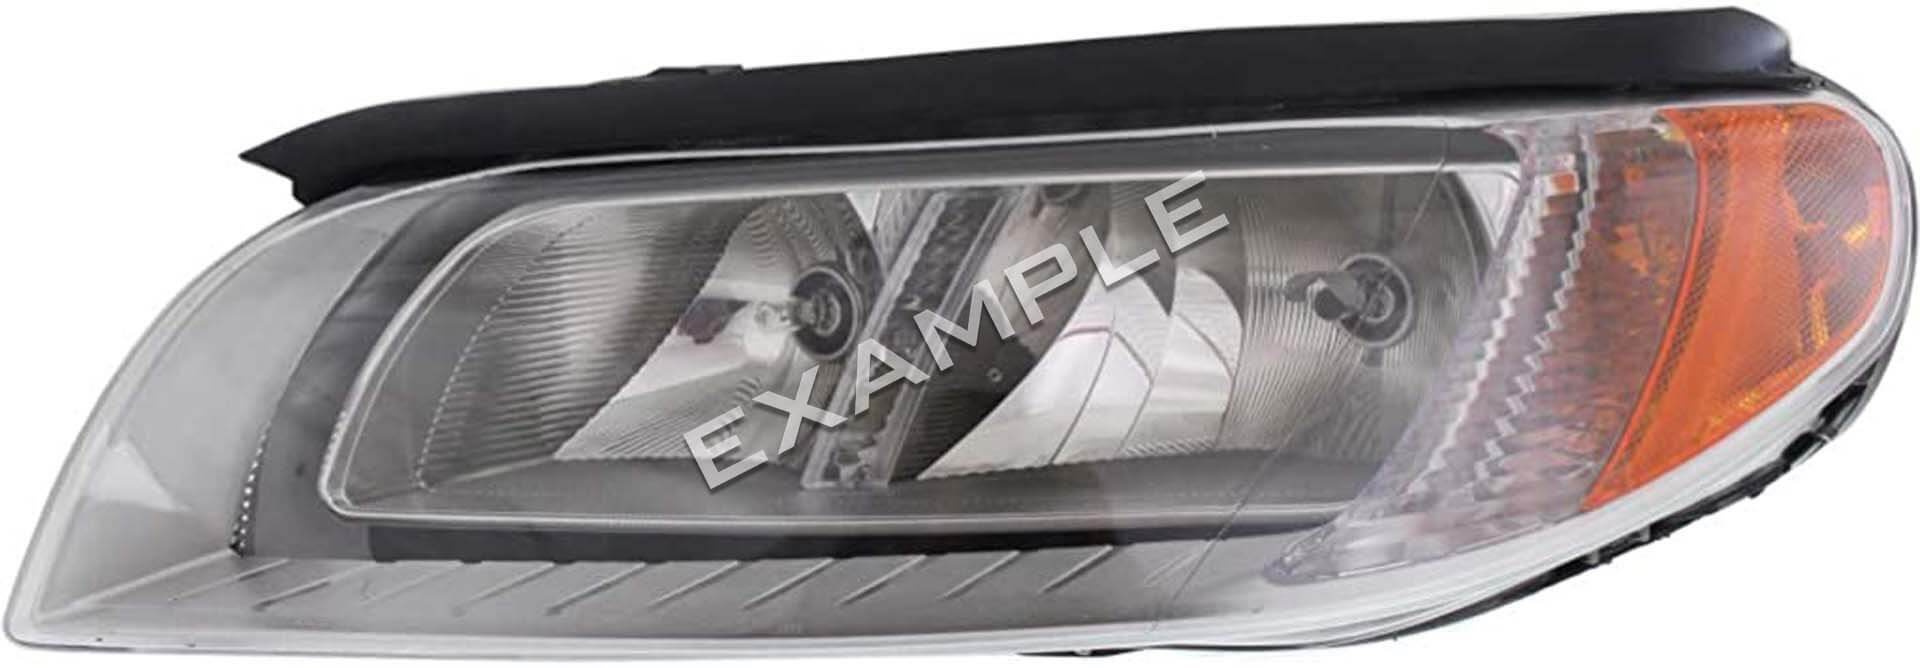 Volvo V70 08-16 Kit de mise à niveau d'éclairage Bi-LED pour phares halogènes